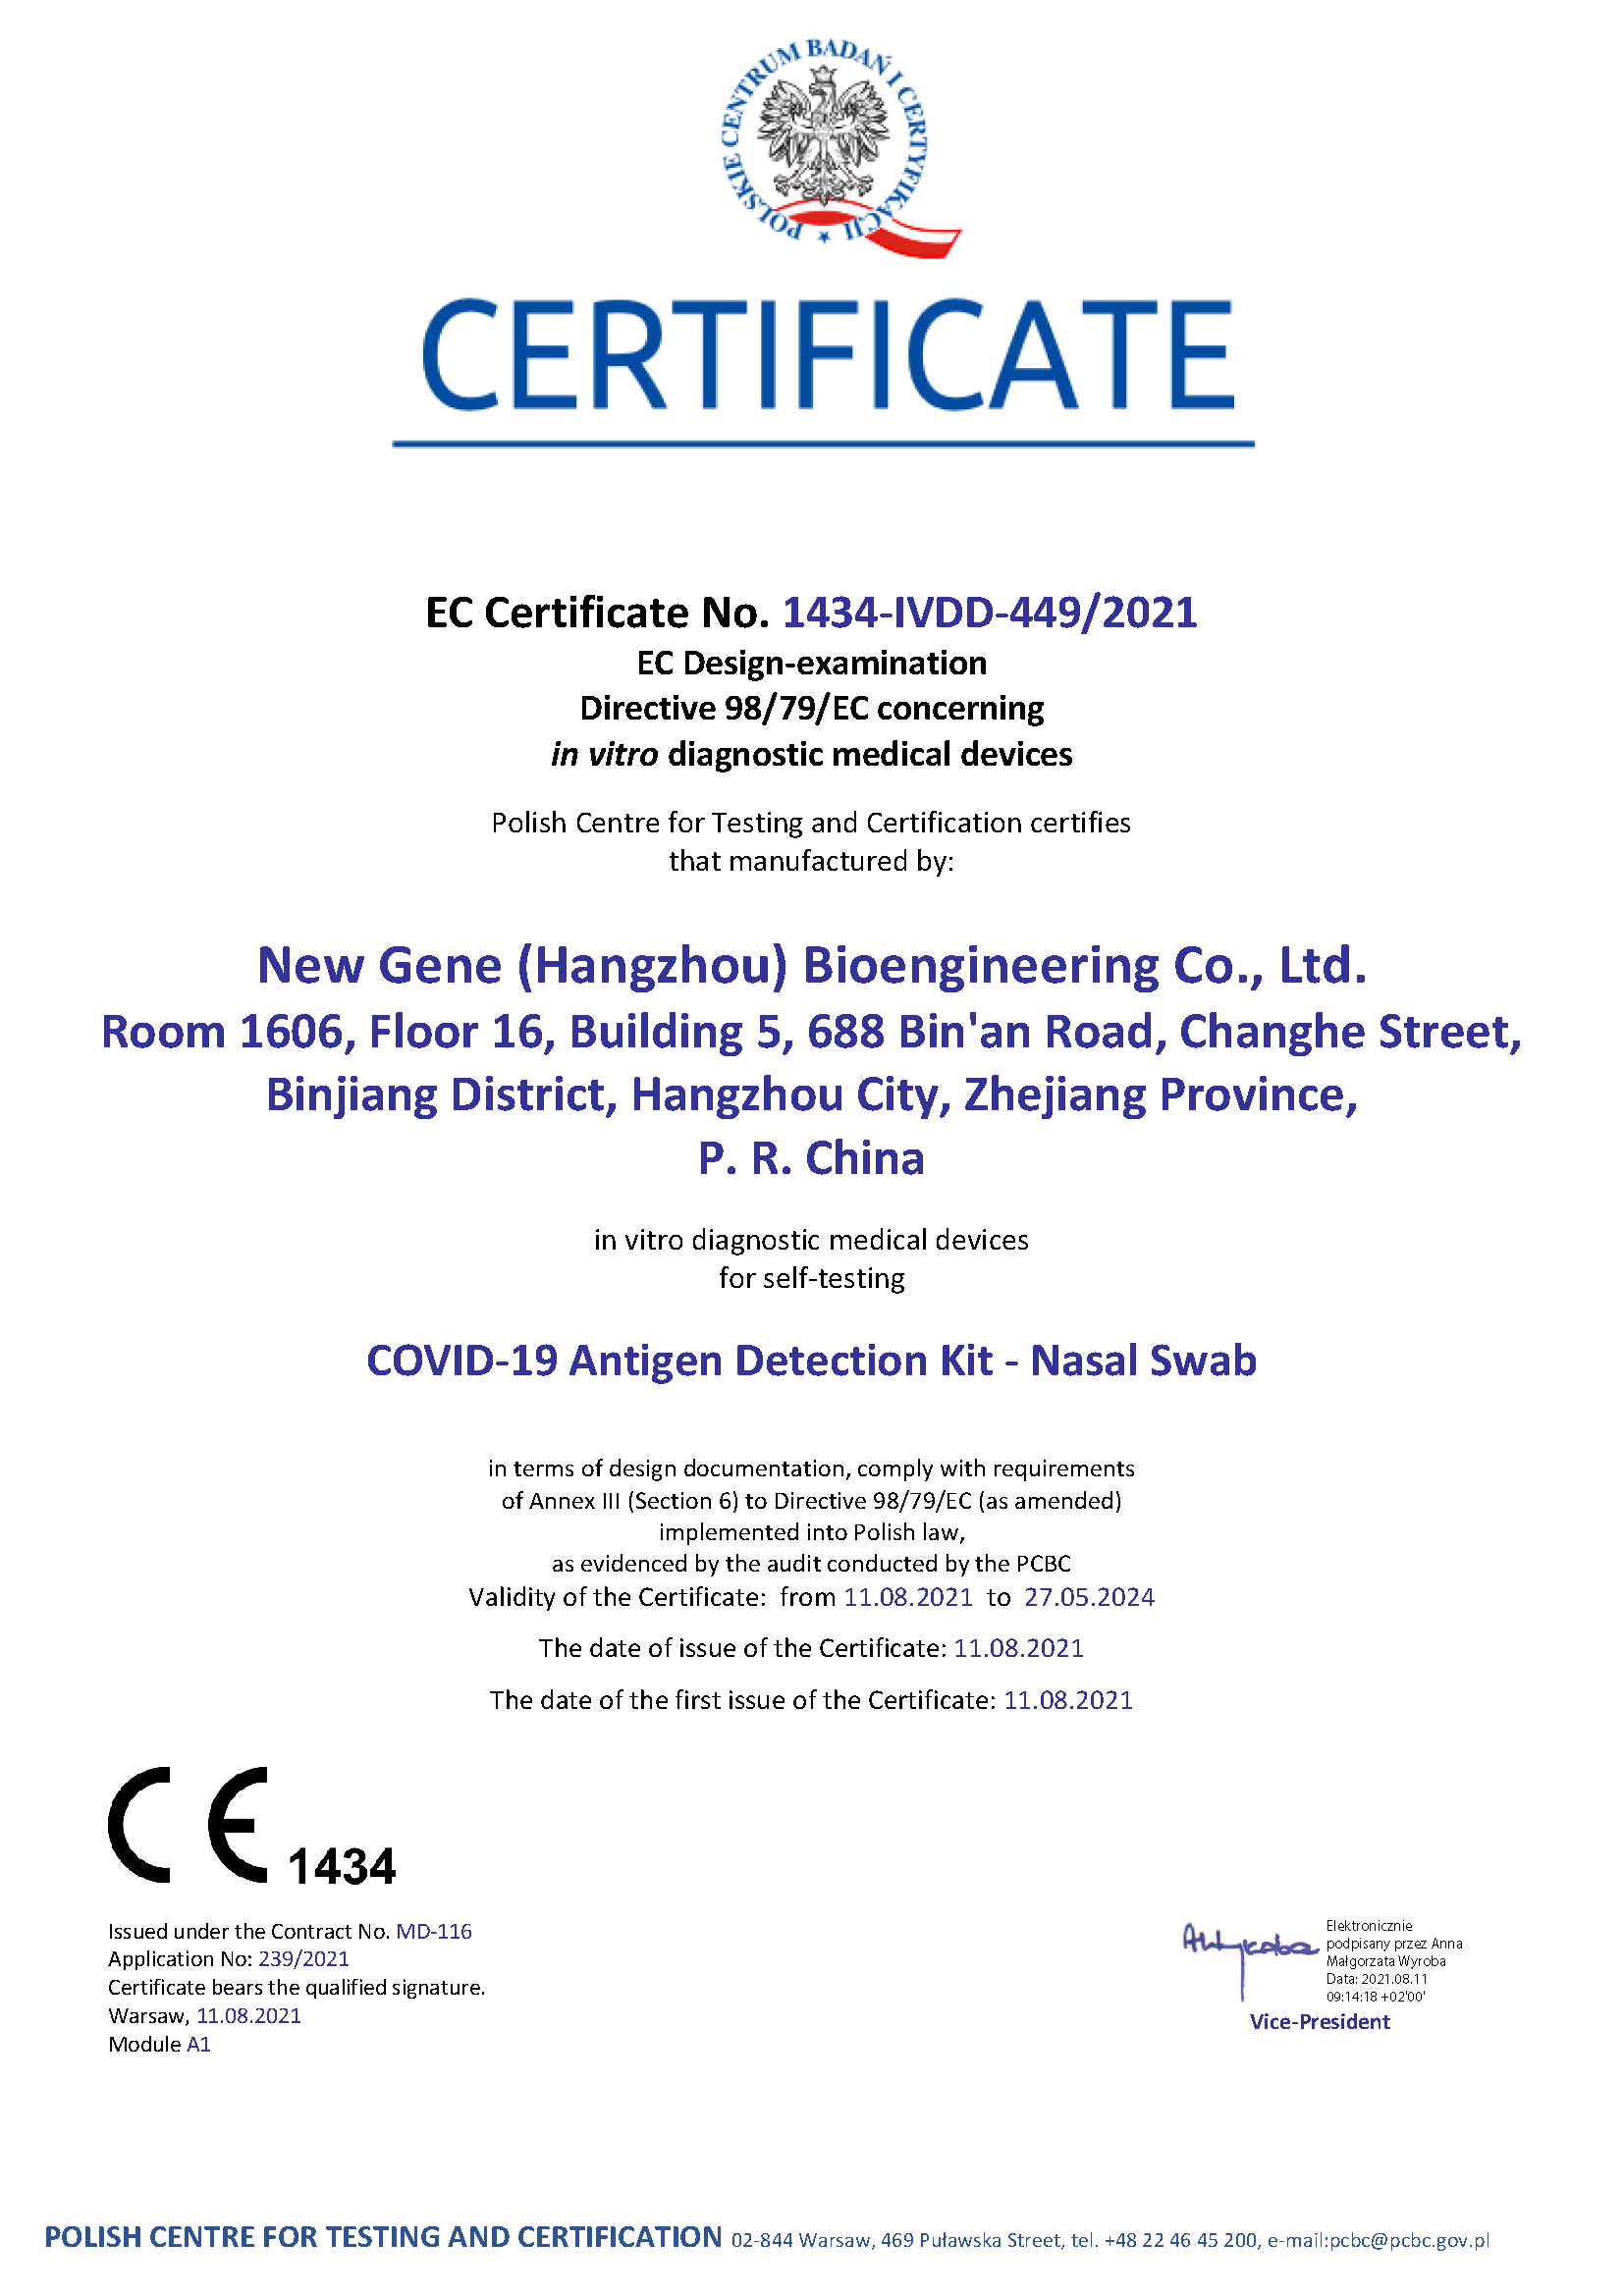 Neie Gene COVID-19 Antigen Detektioun Kit - Selbsttest Zertifika (PCBC 1434)